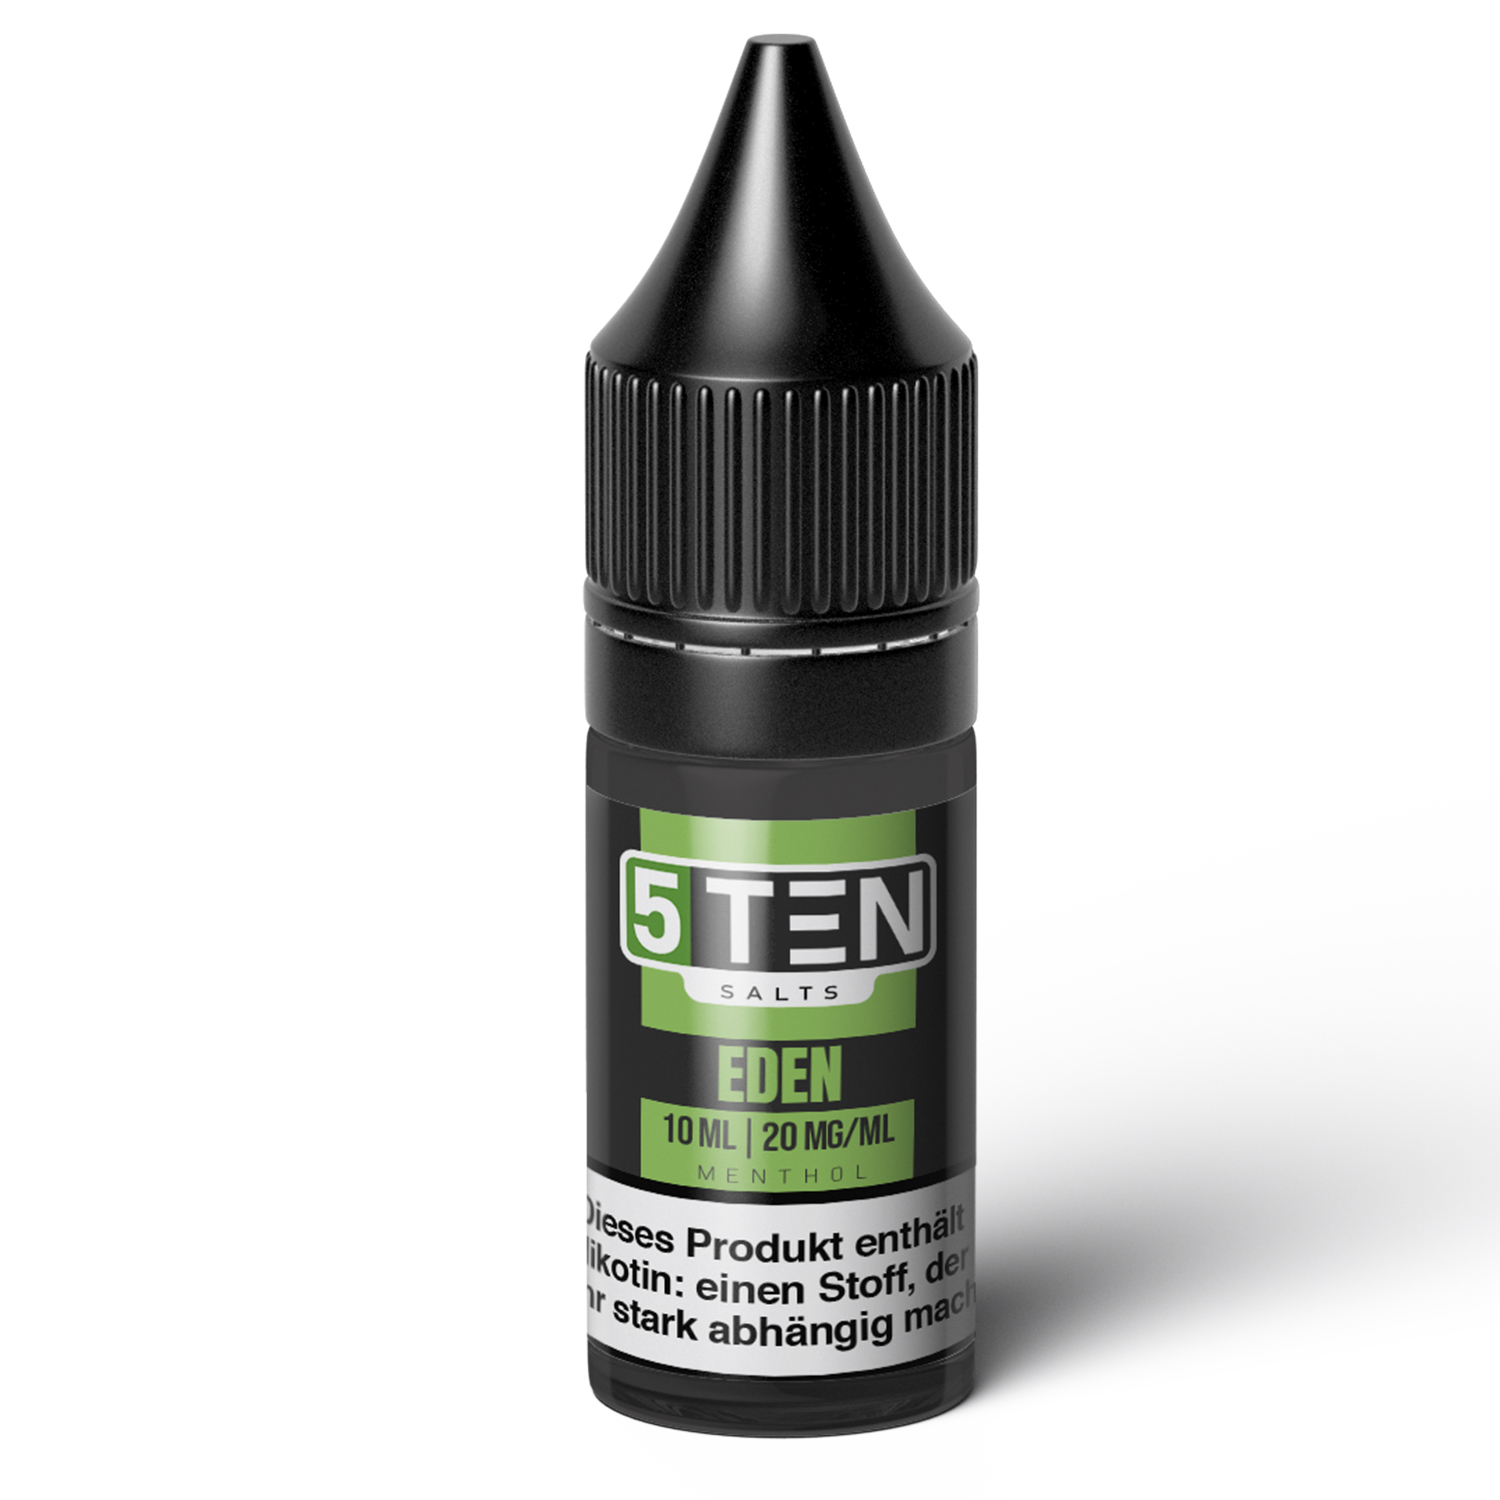 Eden - 5TEN Salts - 20mg/ml - 10ml